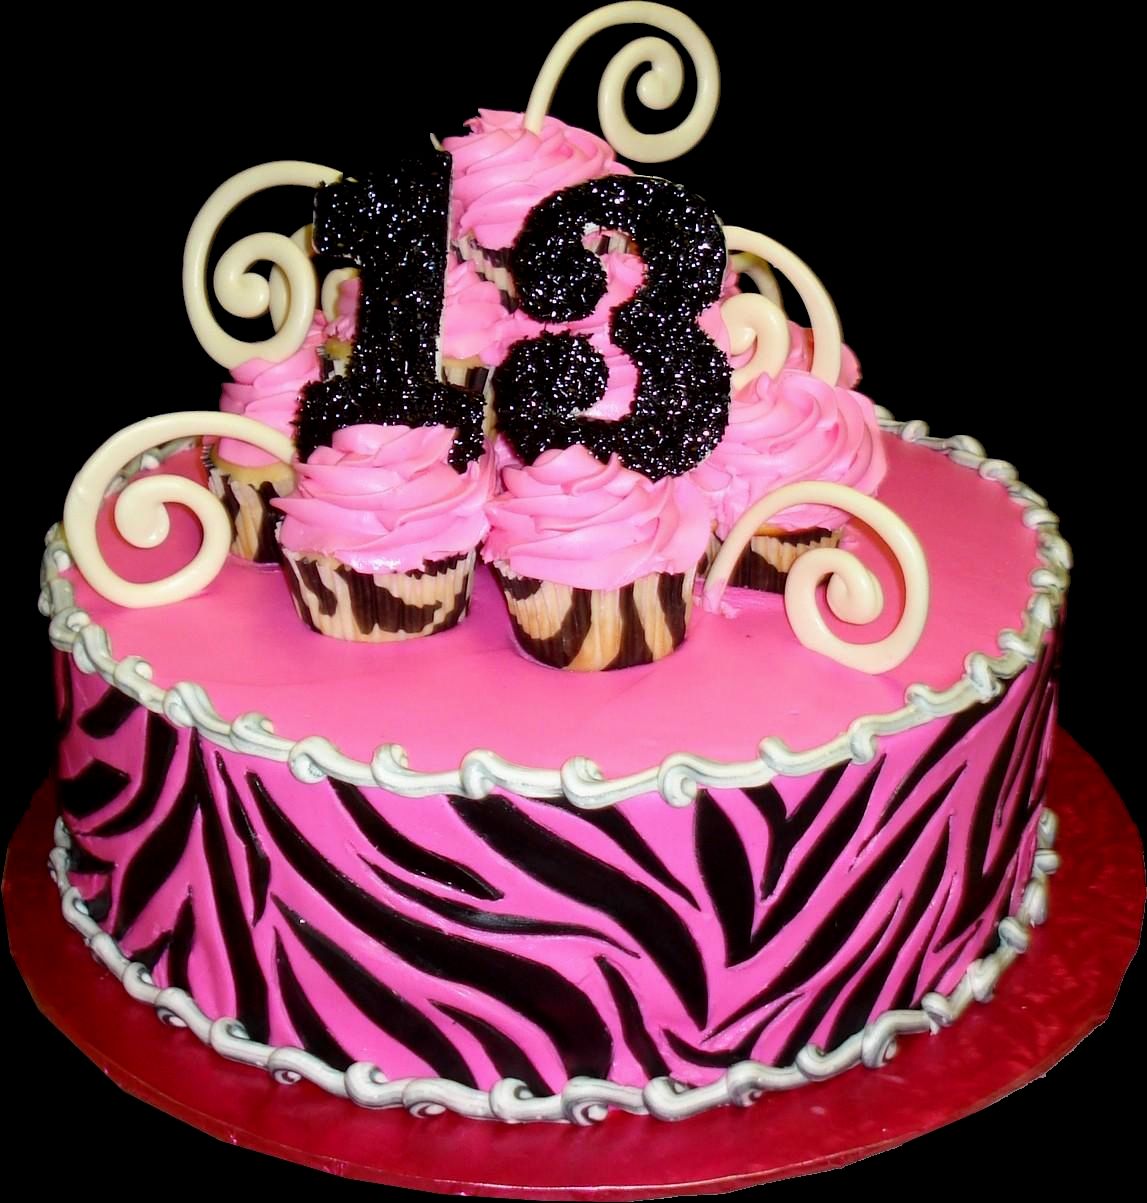 Thirteenth birthday cake ideas information | btownbengal